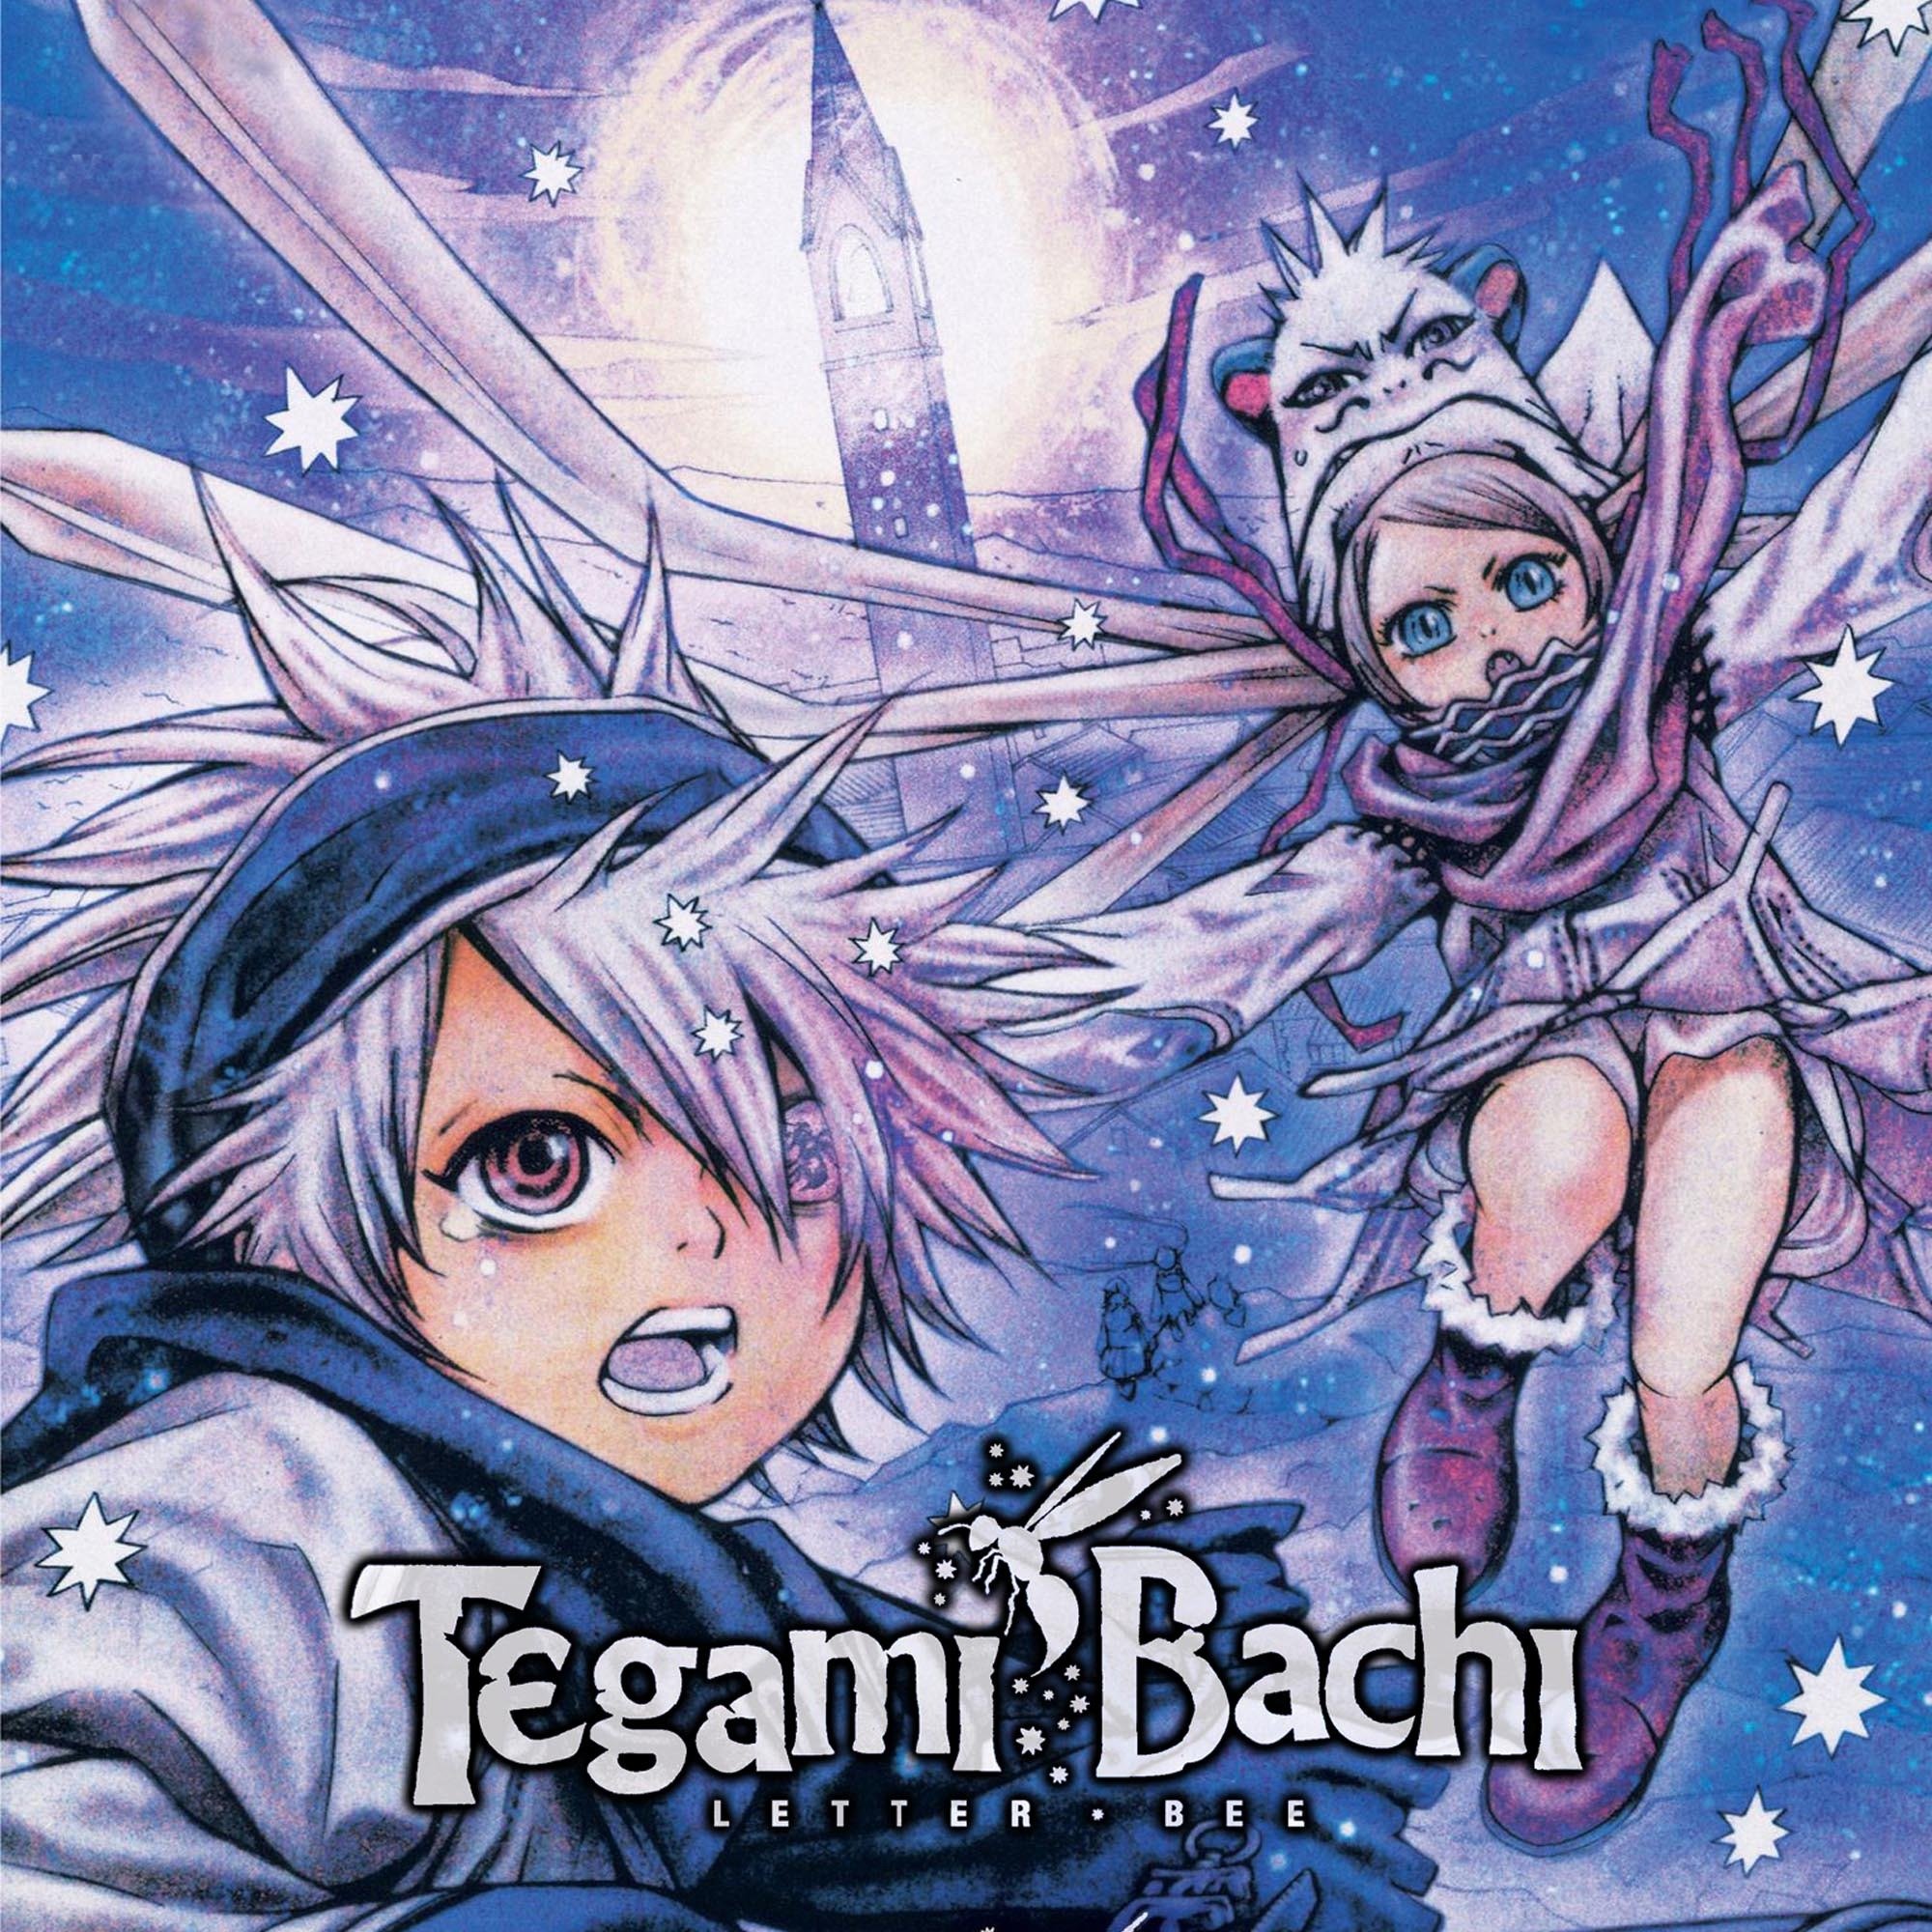 Crunchyroll Gets Tegami Bachi: Letter Bee TV Anime (Update 2